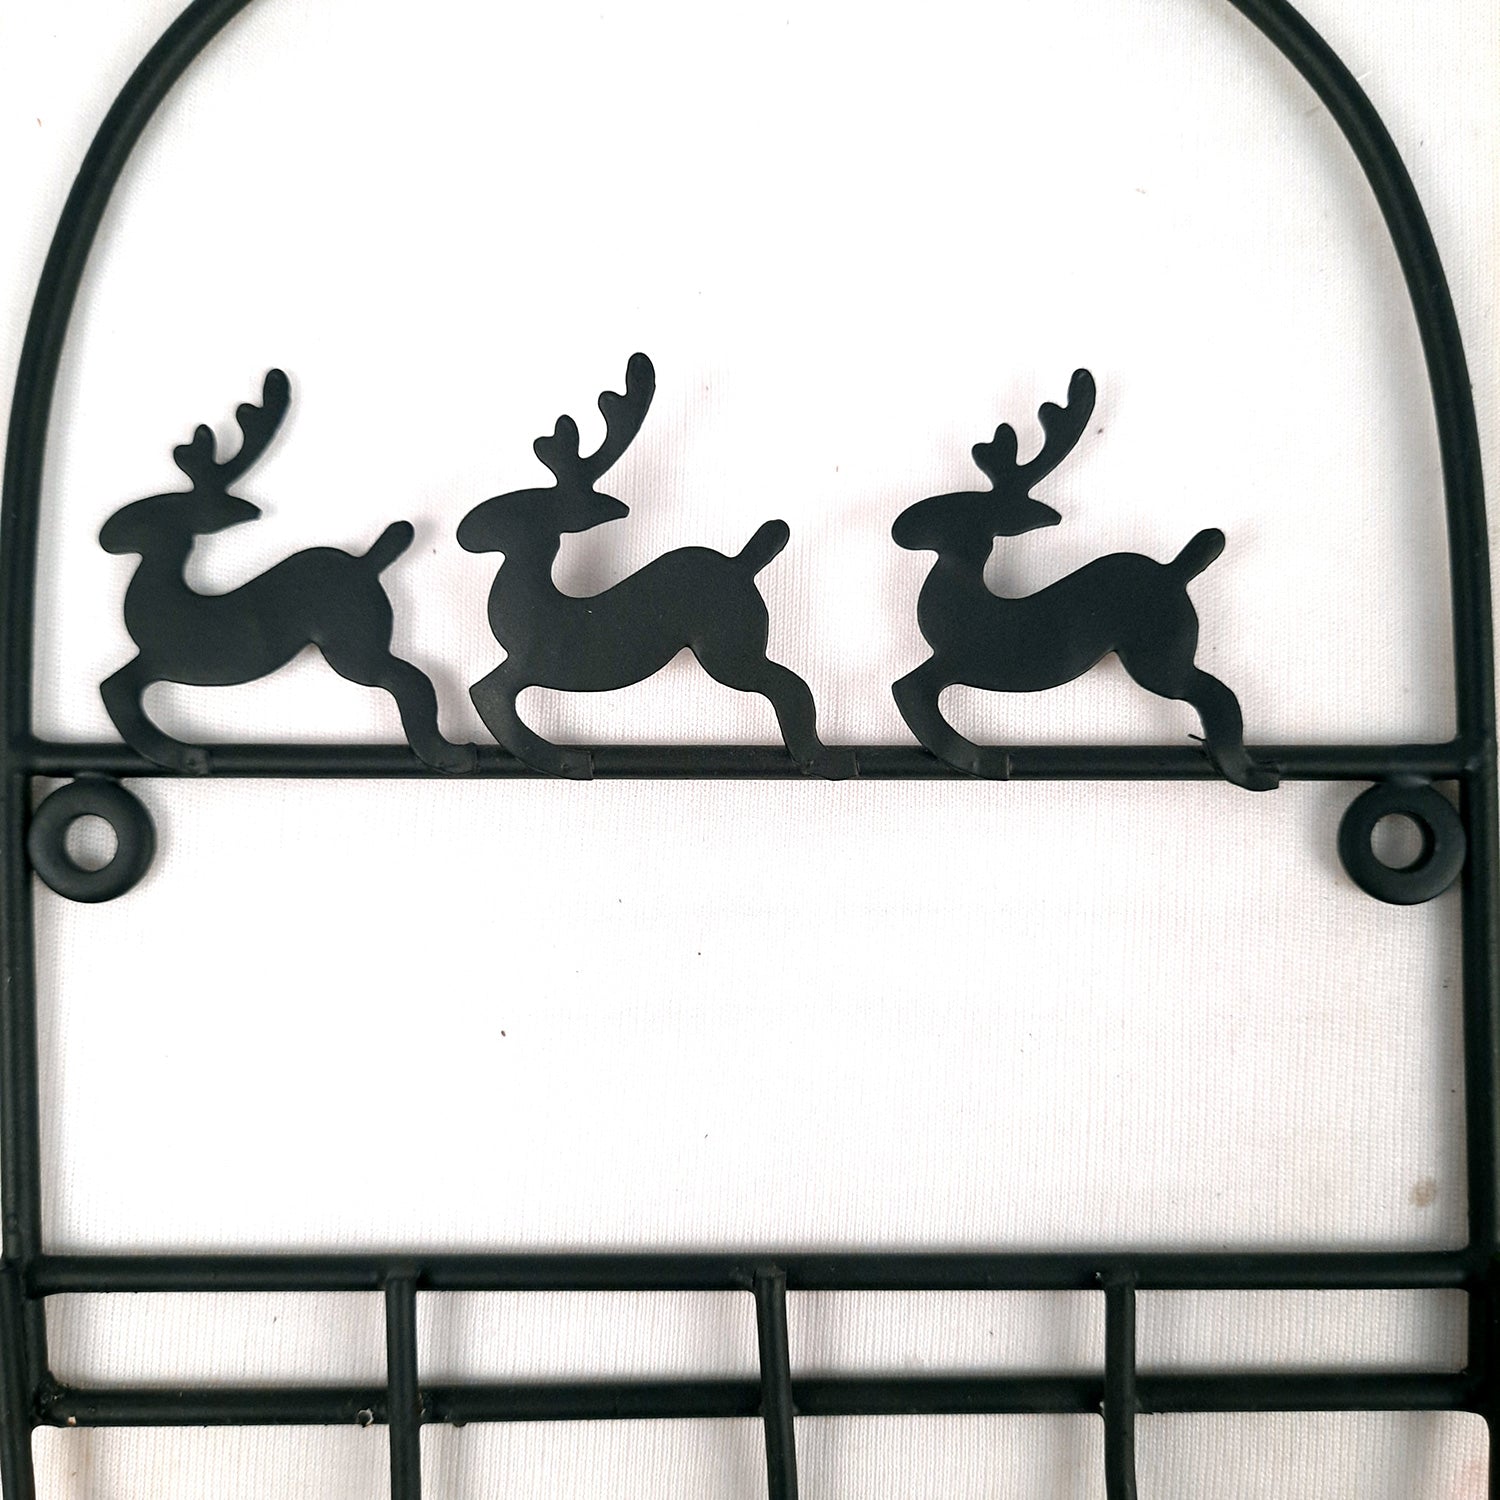 Key Holder Stands | Keys Hook Wall Hangers - Reindeer Design | Keys Organizer - For Home, Entrance, Office Decor & Gifts - 9 Inch (5 Hooks) - Apkamart #Style_Pack of 1